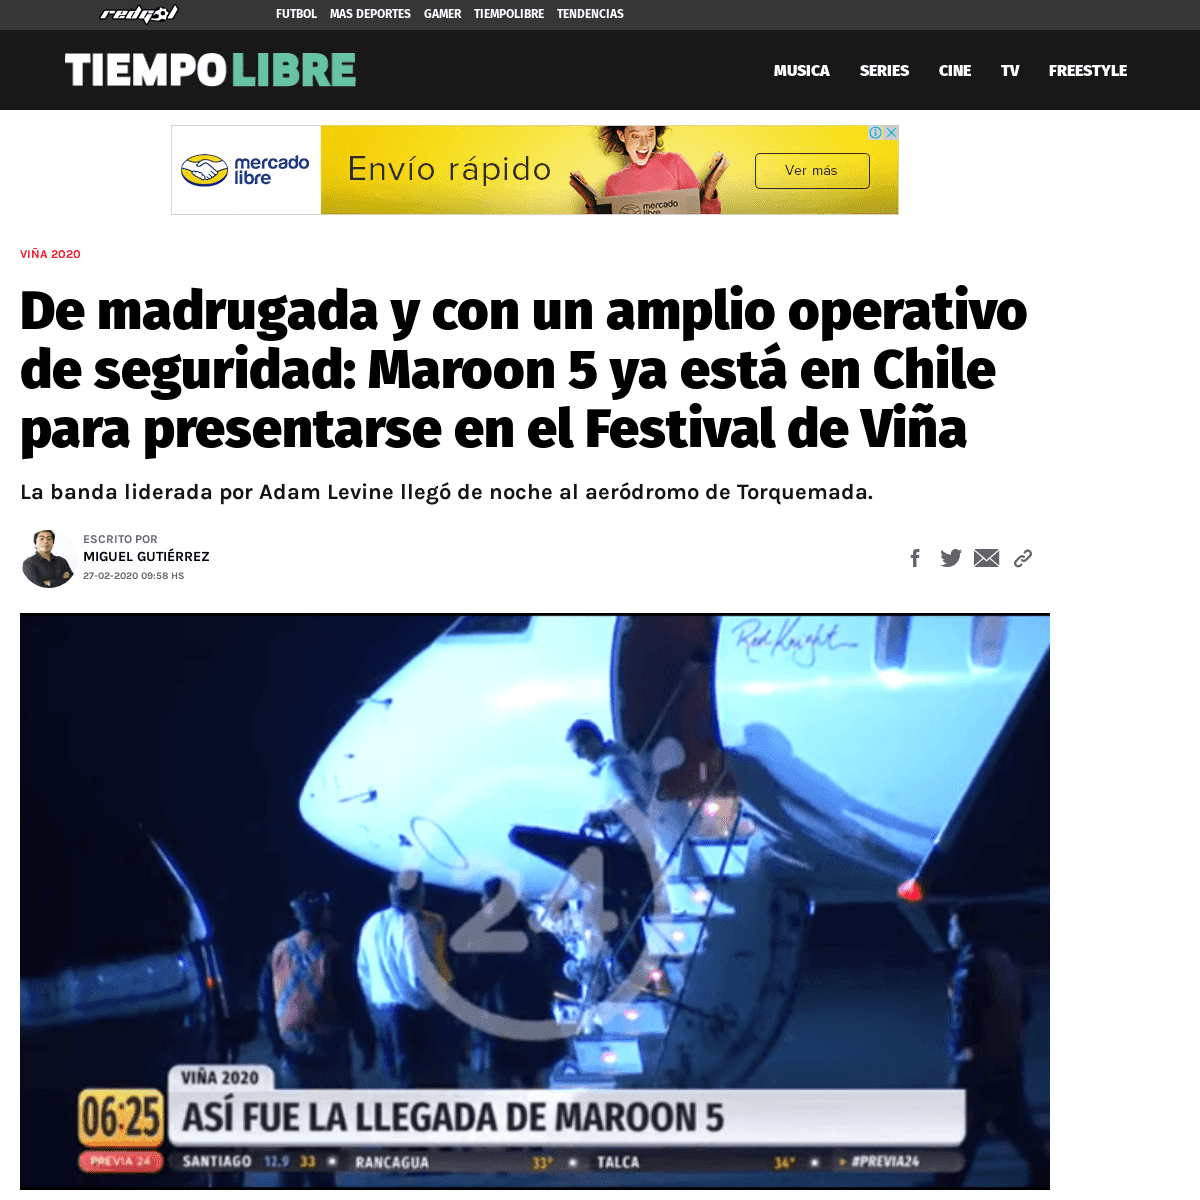 A complete backup of redgol.cl/tiempolibre/De-madrugada-y-con-un-amplio-operativo-de-seguridad-Maroon-5-ya-esta-en-Chile-para-pr